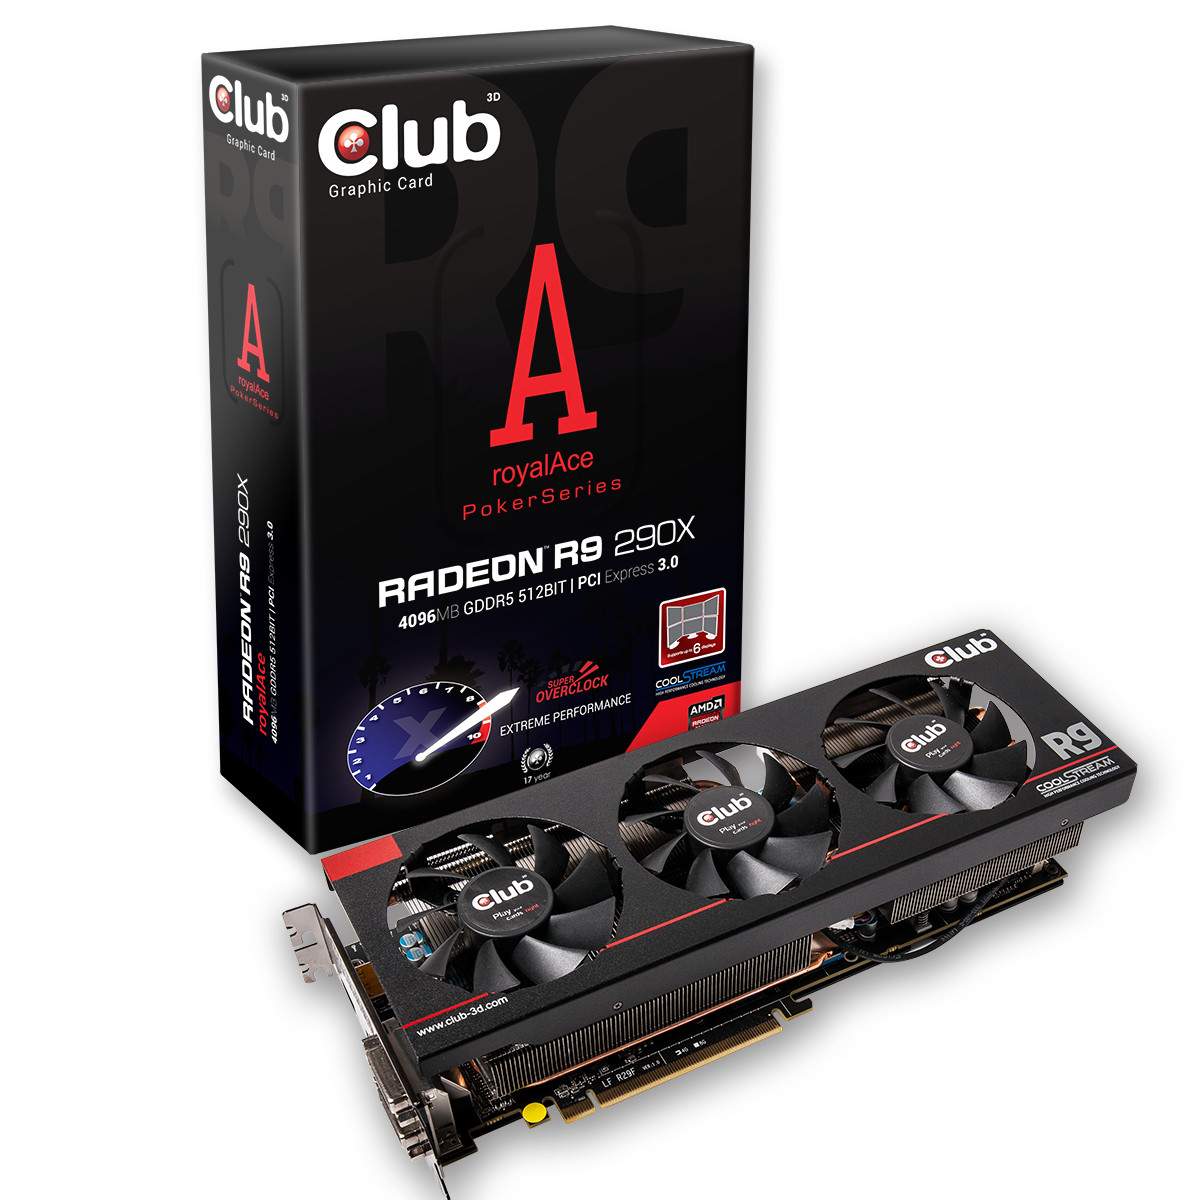 Immagine pubblicata in relazione al seguente contenuto: Club 3D introduce la card non reference Radeon R9 290X royalAce | Nome immagine: news20887_Club-3D-Radeon-R9-290X-royalAce_1.jpg